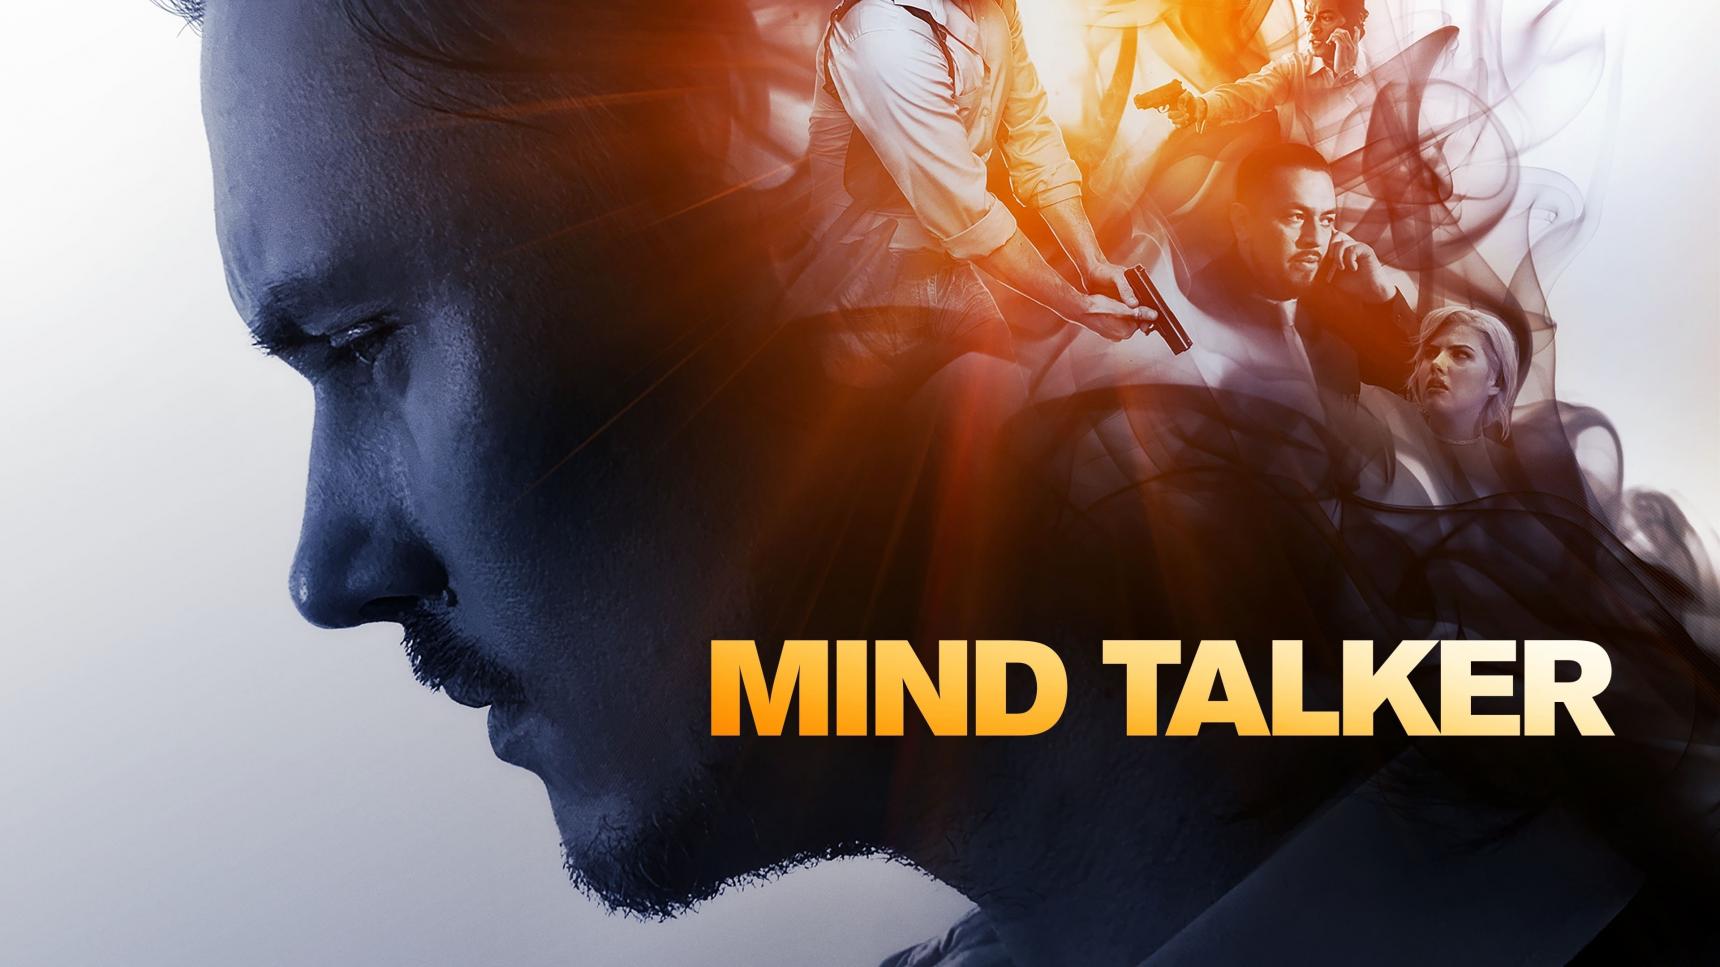 Fondo de pantalla de la película Mind Talker en Cliver.tv gratis